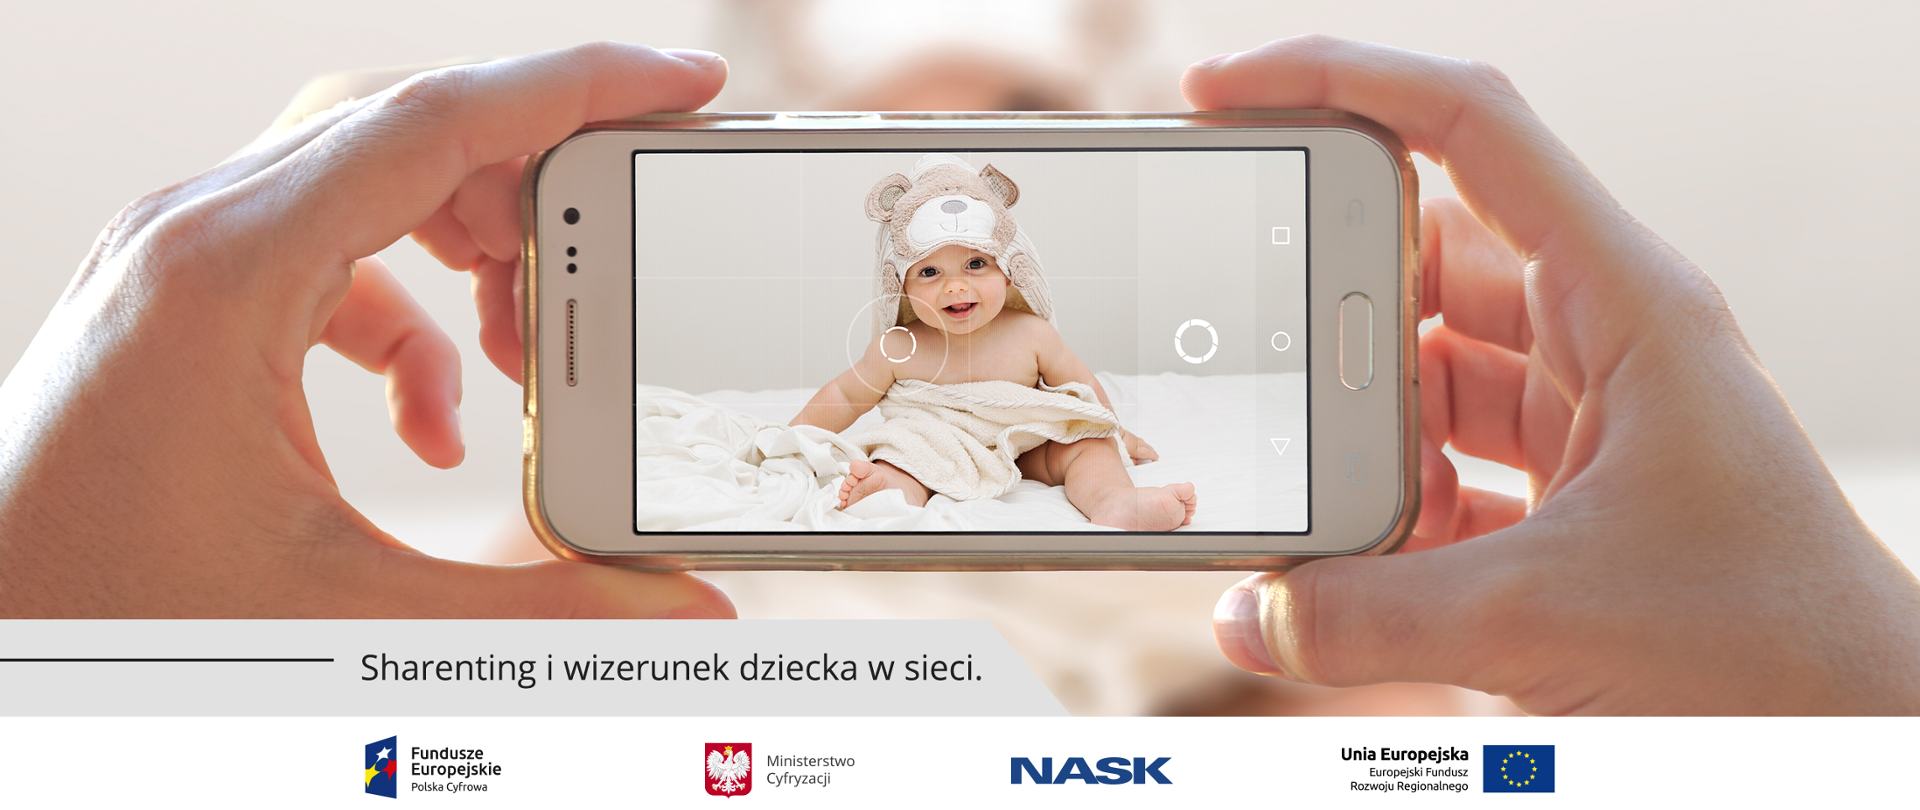 Grafika. Rodzic wykonujący smartfonem zdjęcie kilkumiesięcznemu dziecku. Poniżej napis: Sharenting i wizerunek dziecka w sieci. 